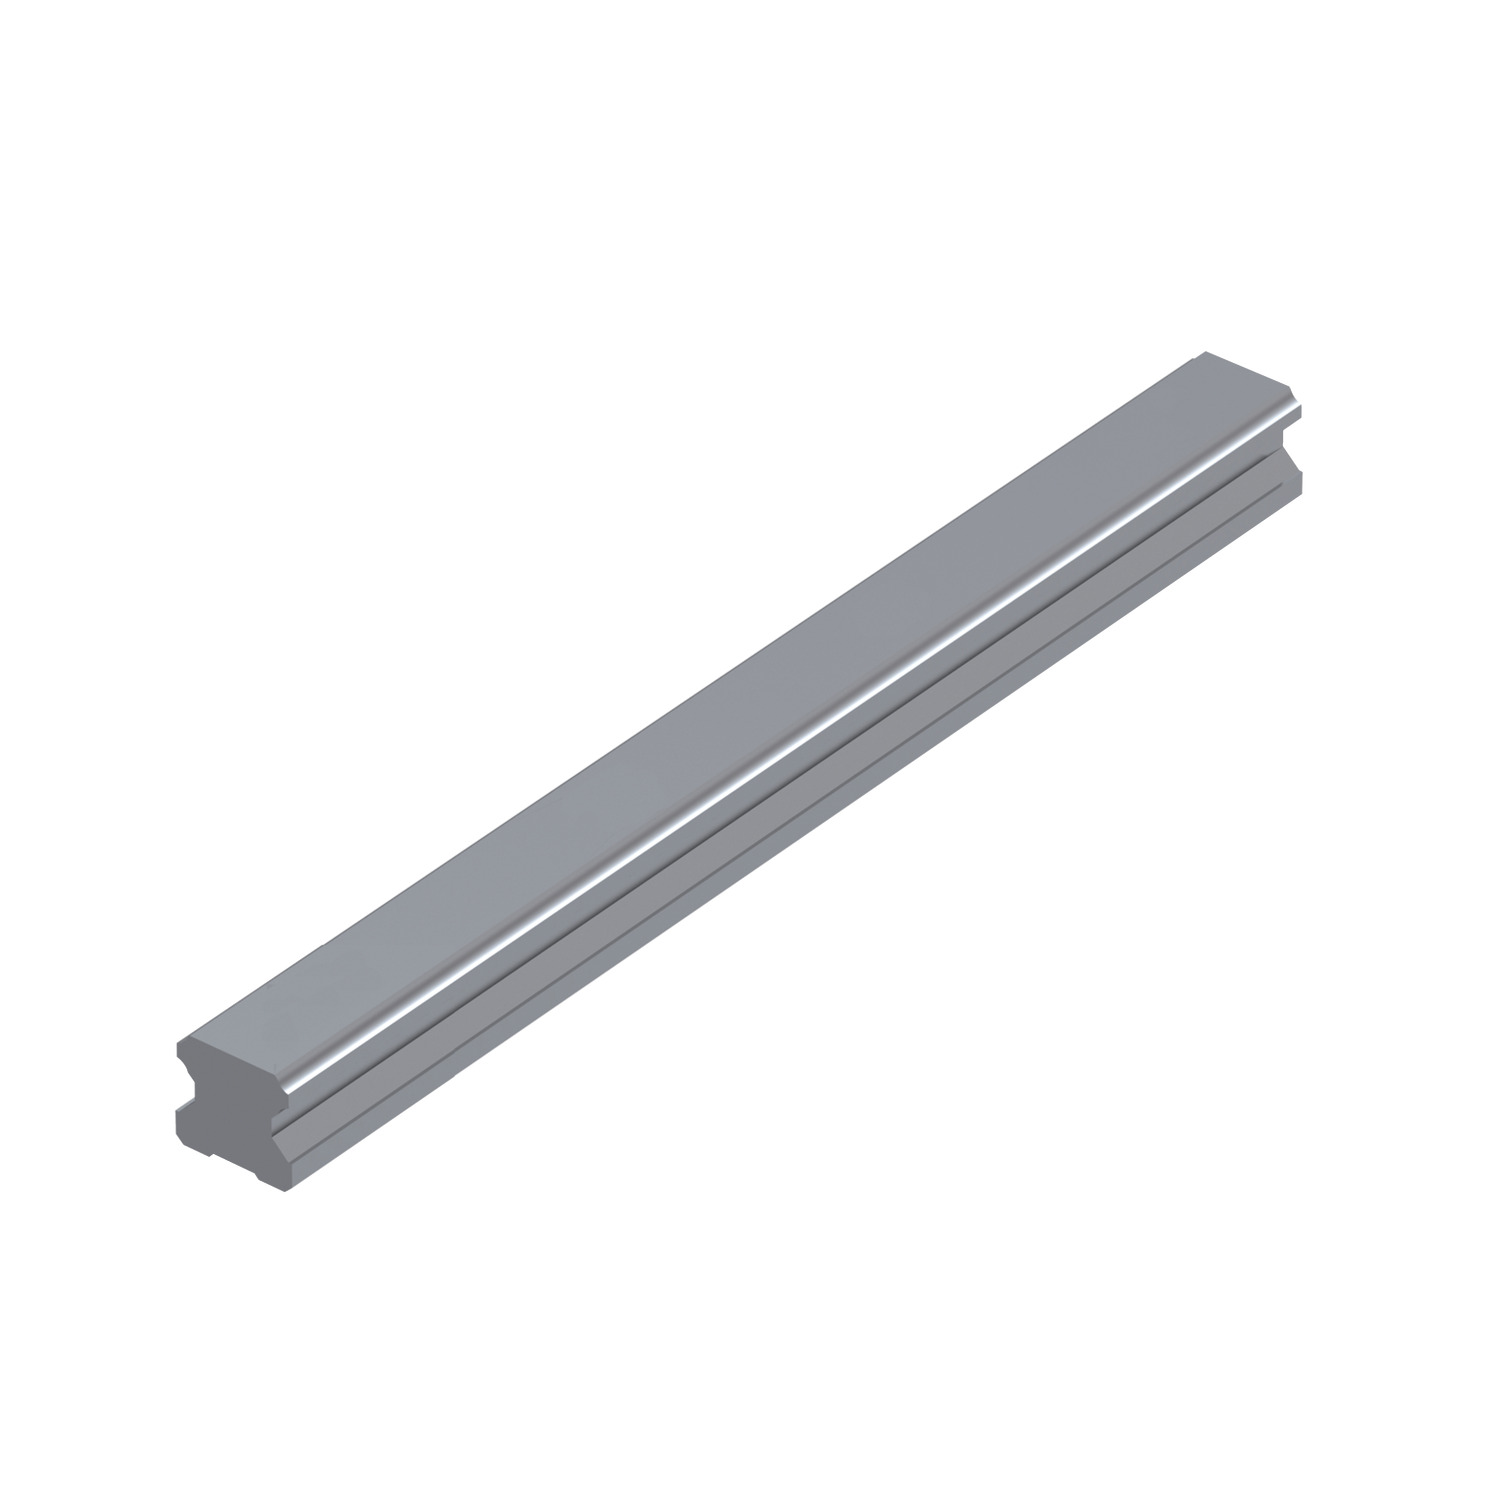 L1016.RF 15mm Linear Guide Rail